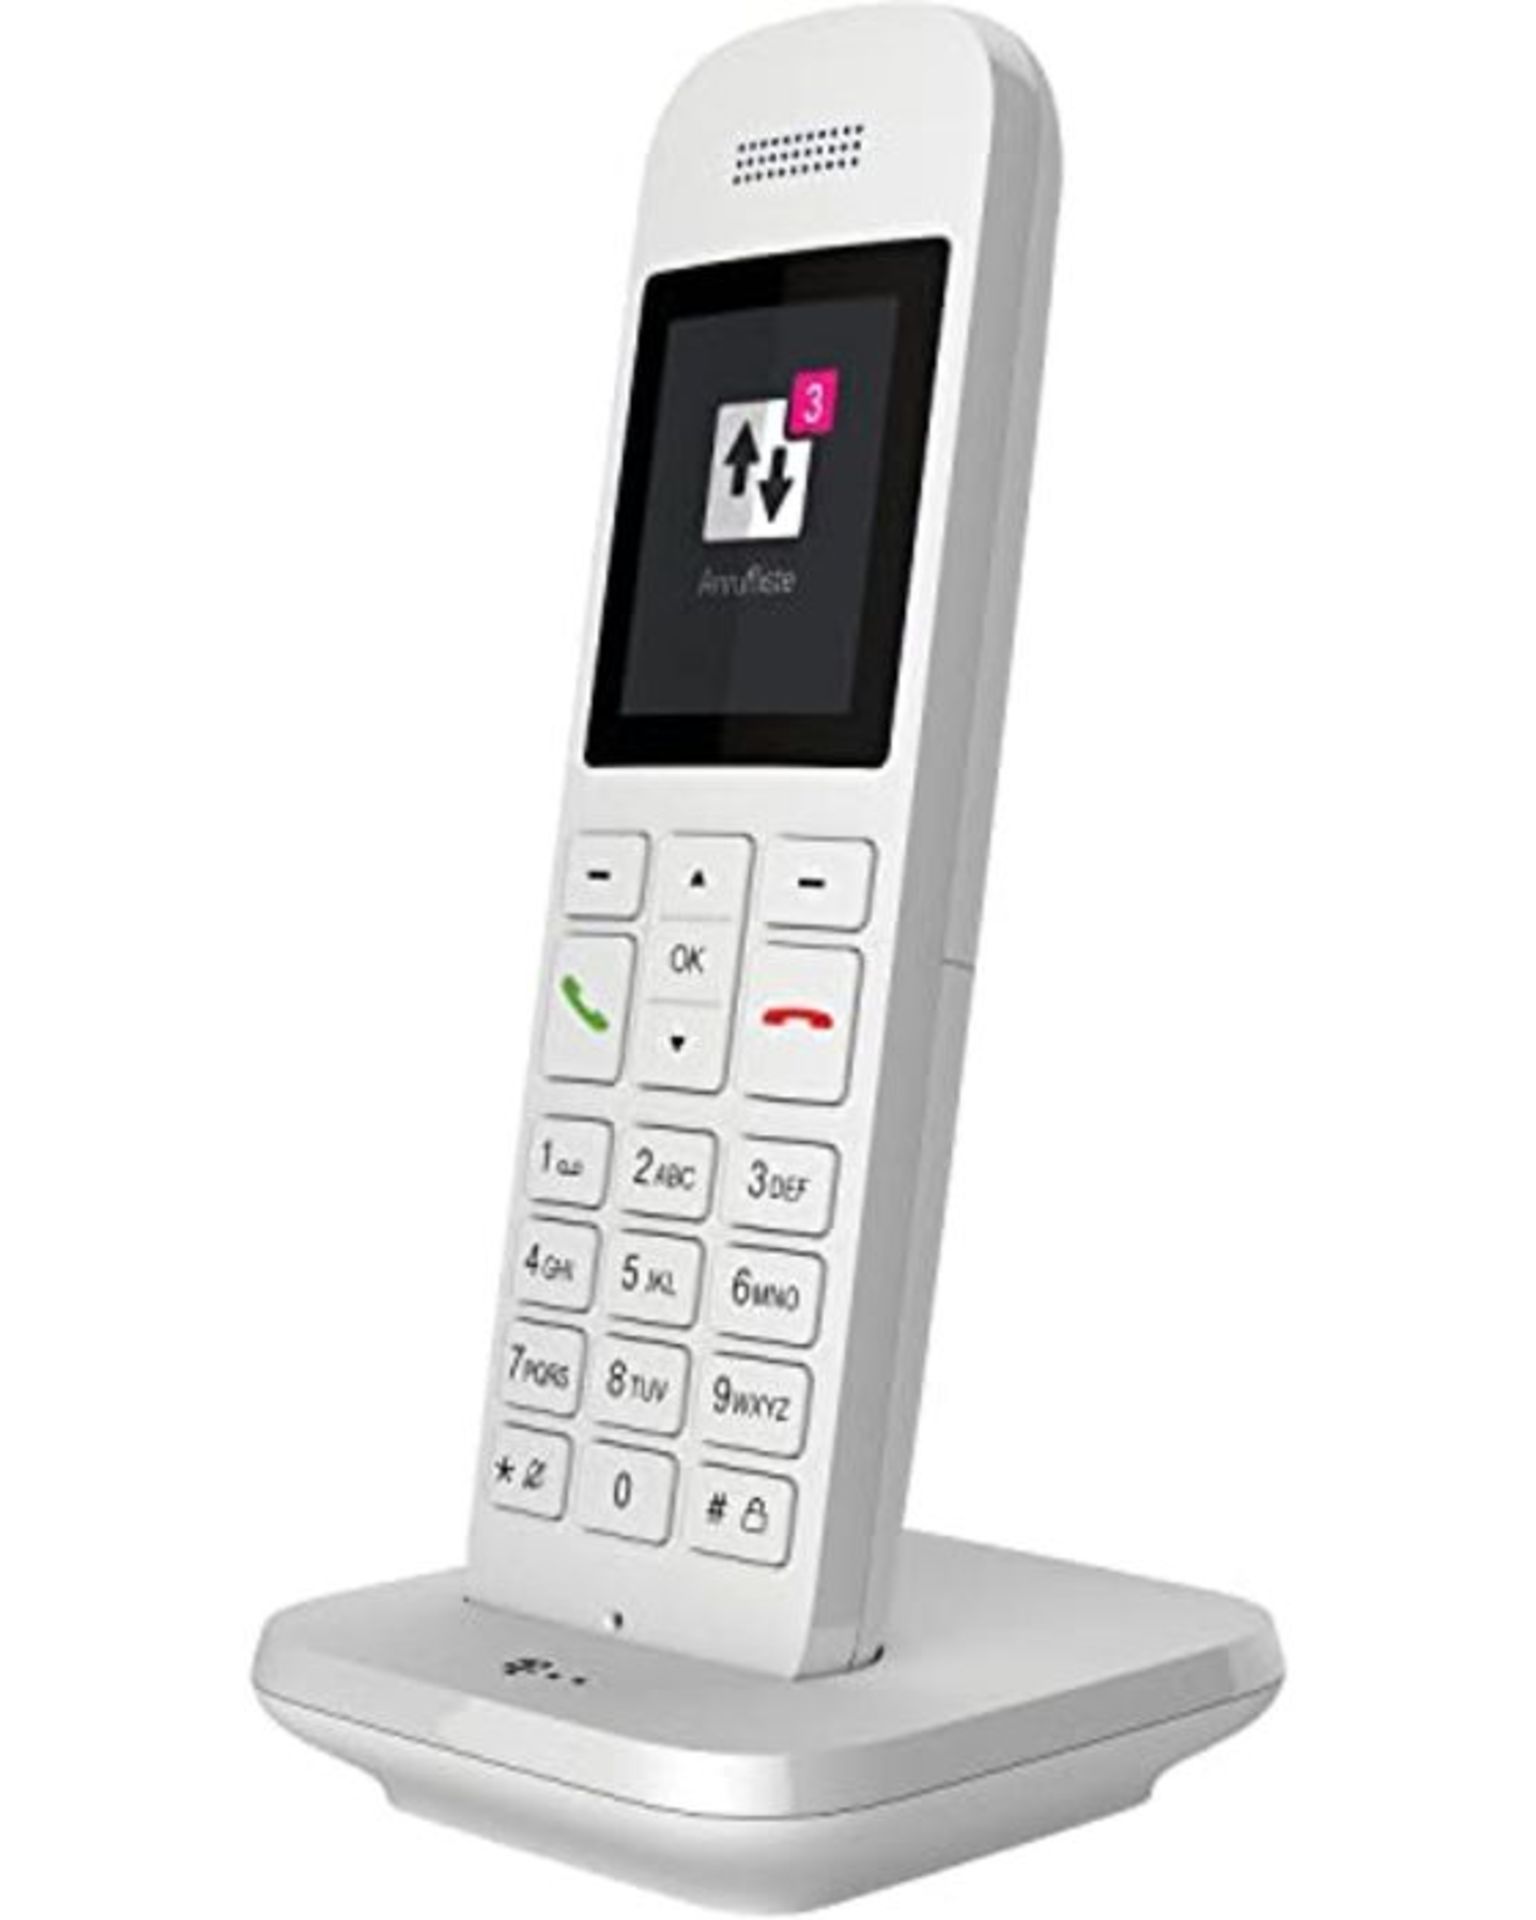 Telekom Speedphone 12 IP phone White Wireless handset TFT - Telekom Speedphone 12, Whi